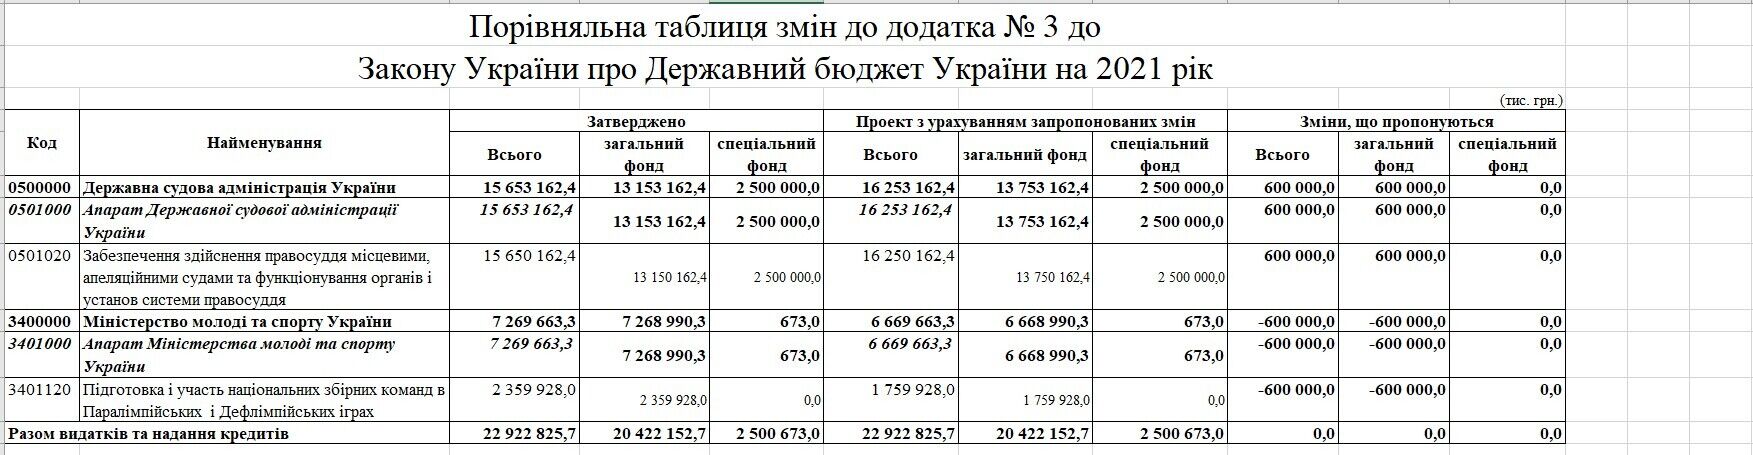 В Украине заберут 600 млн грн у спортсменов и потратят их на суды: законопроект поддержали в первом чтении